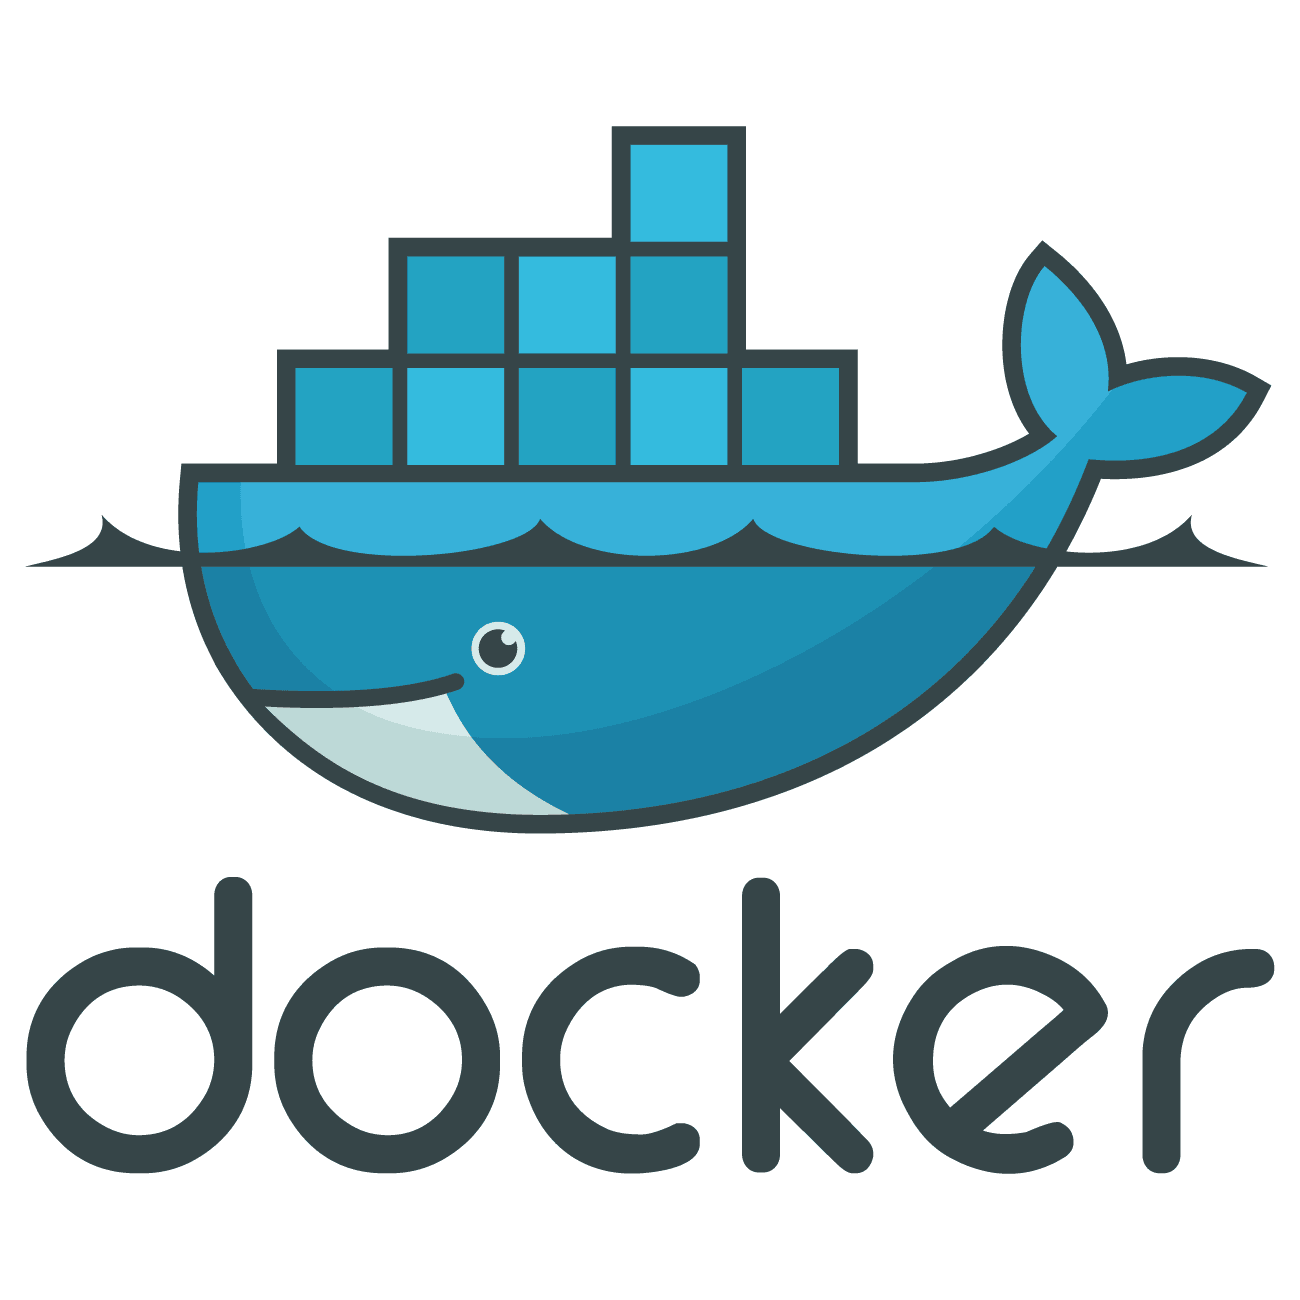 A thumbnail to represent the post Docker: Instalando docker en Windows